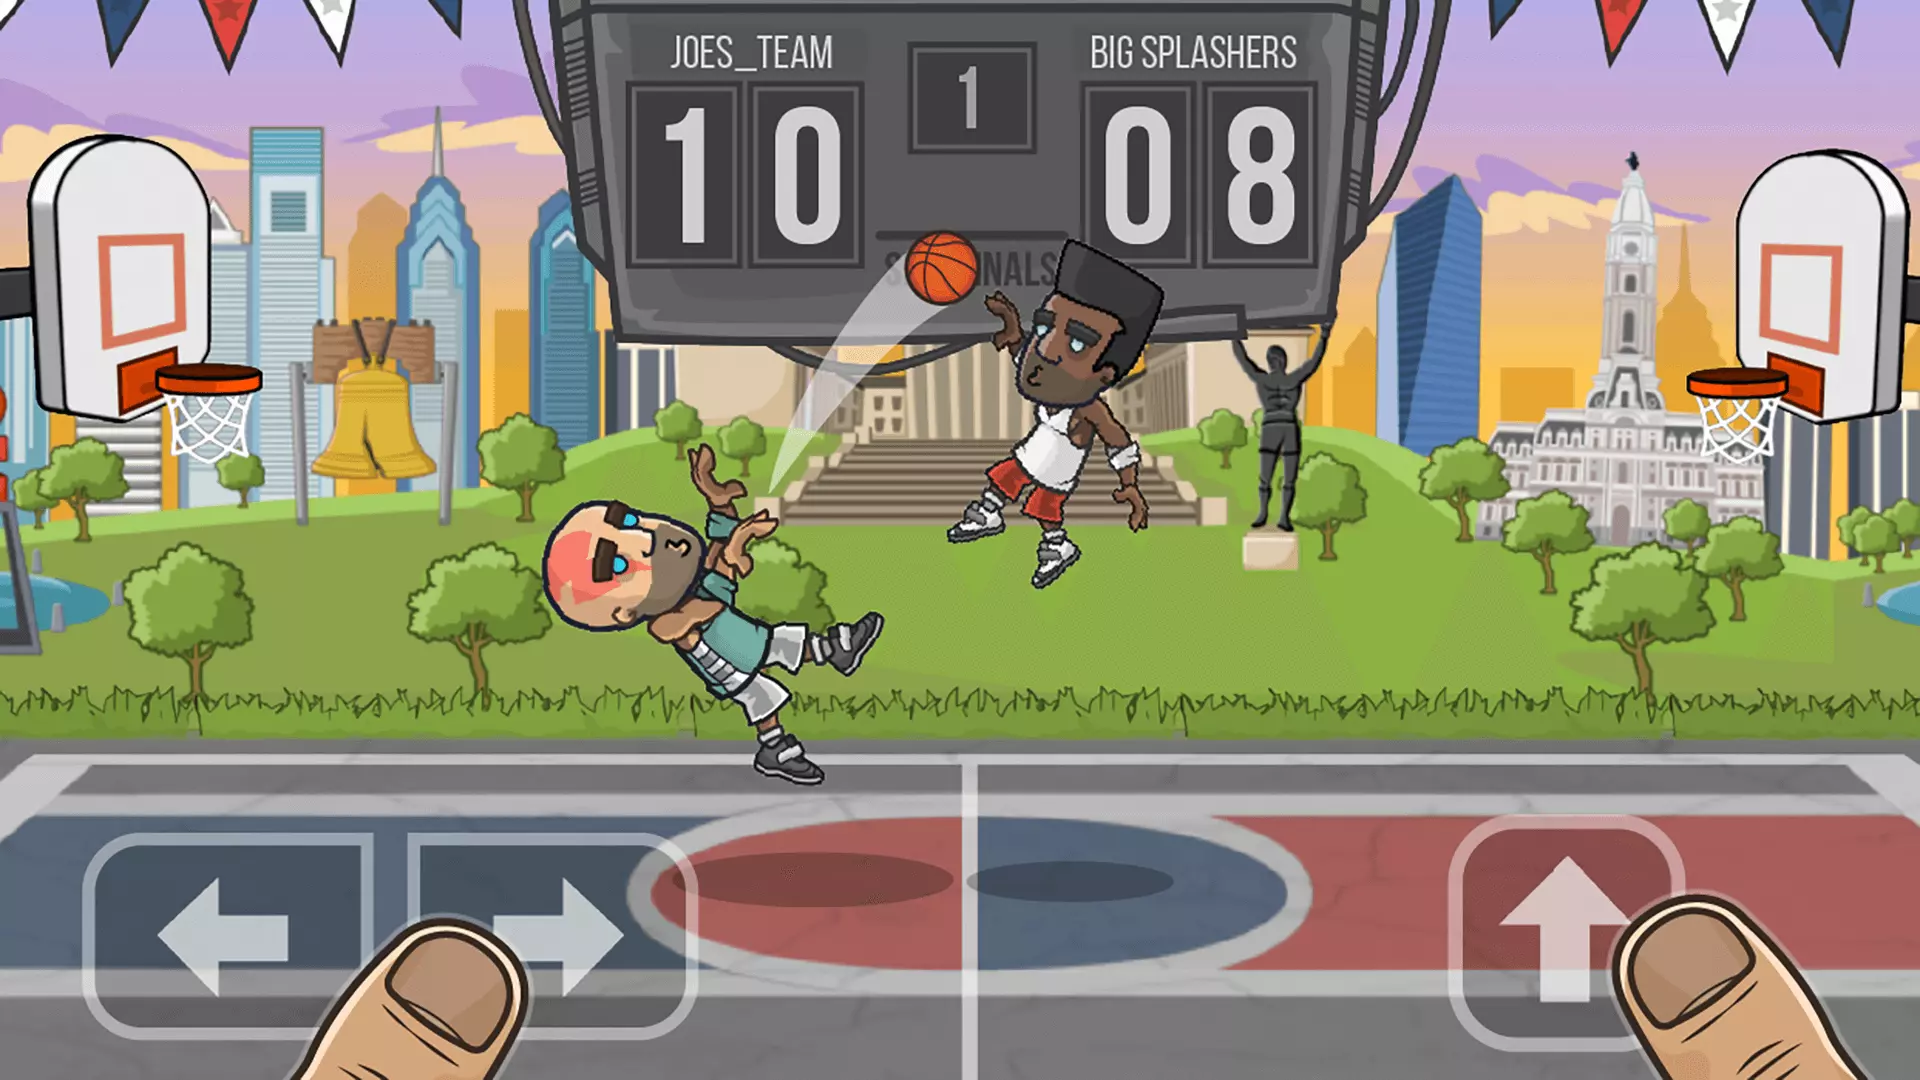 basketball battle